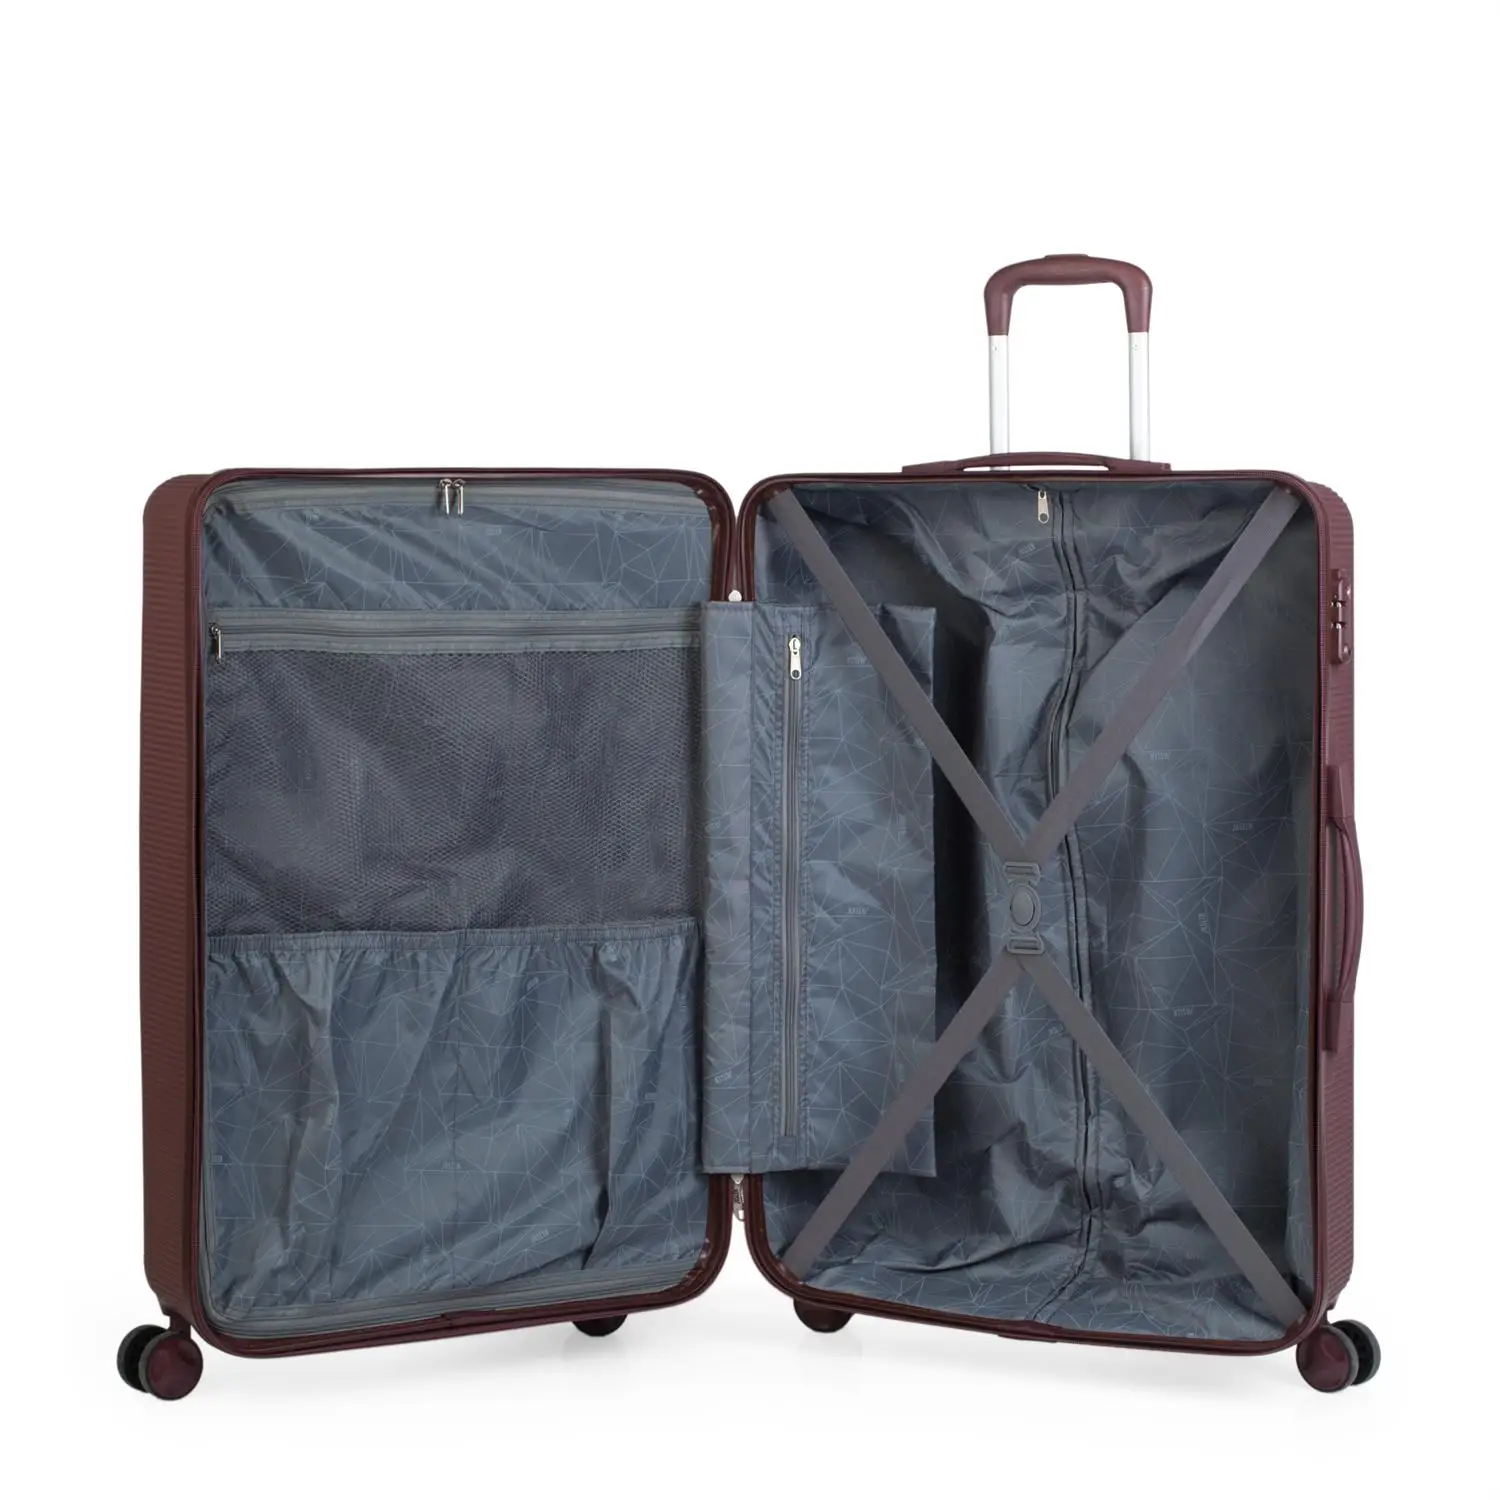 Juego чемоданы жесткие 4 поворотные механизмы колес тележки 54 66 см ABS. Устойчивый и легкий. Ручки TSA замок. Маленький